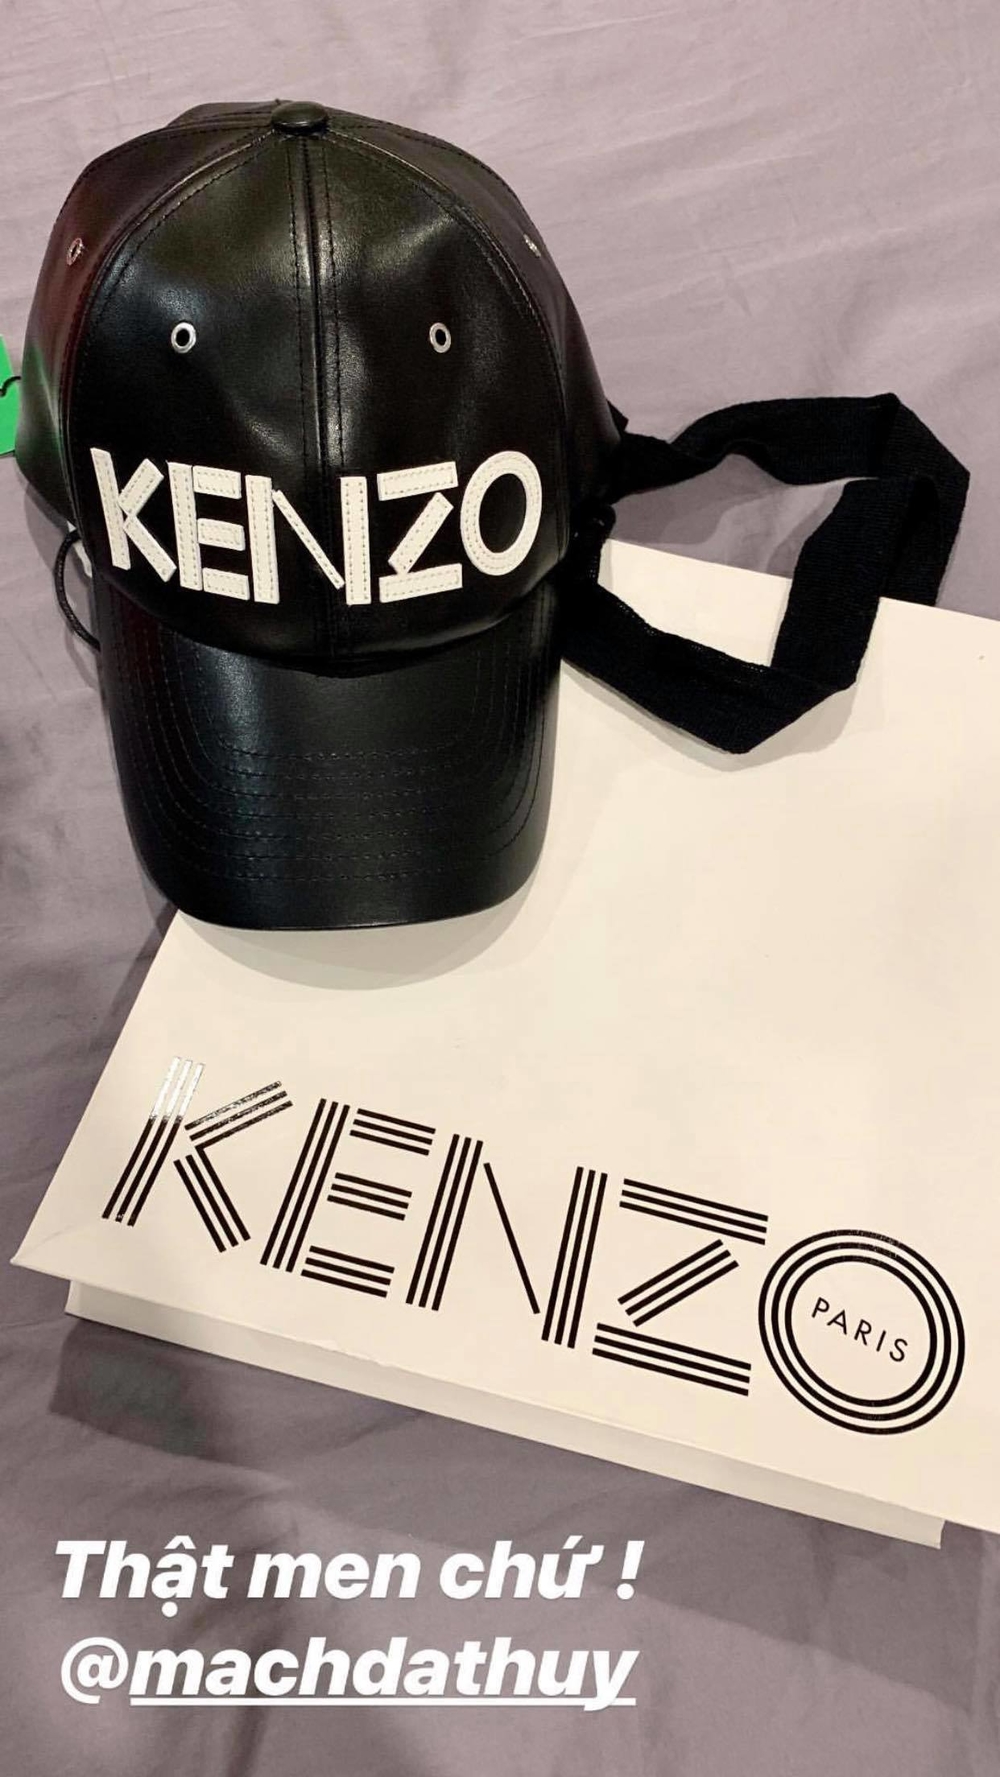  
Chiếc mũ đen Kenzo này có giá hơn khoảng hơn 4 triệu đồng.